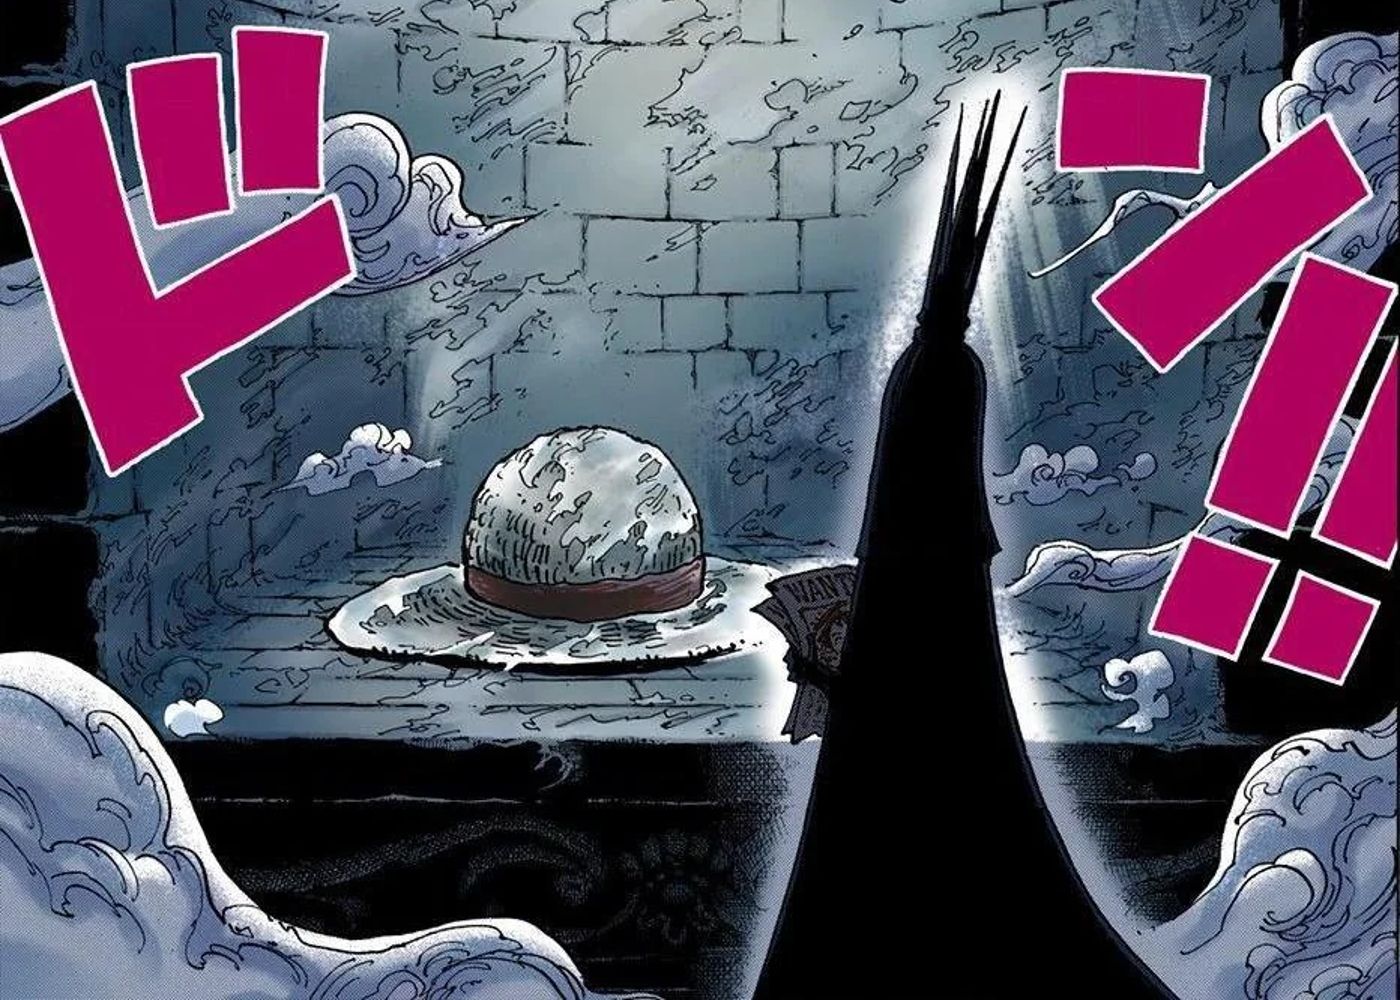 Imu betrachtet den riesigen Strohhut, der in Marijoa in One Piece eingefroren ist